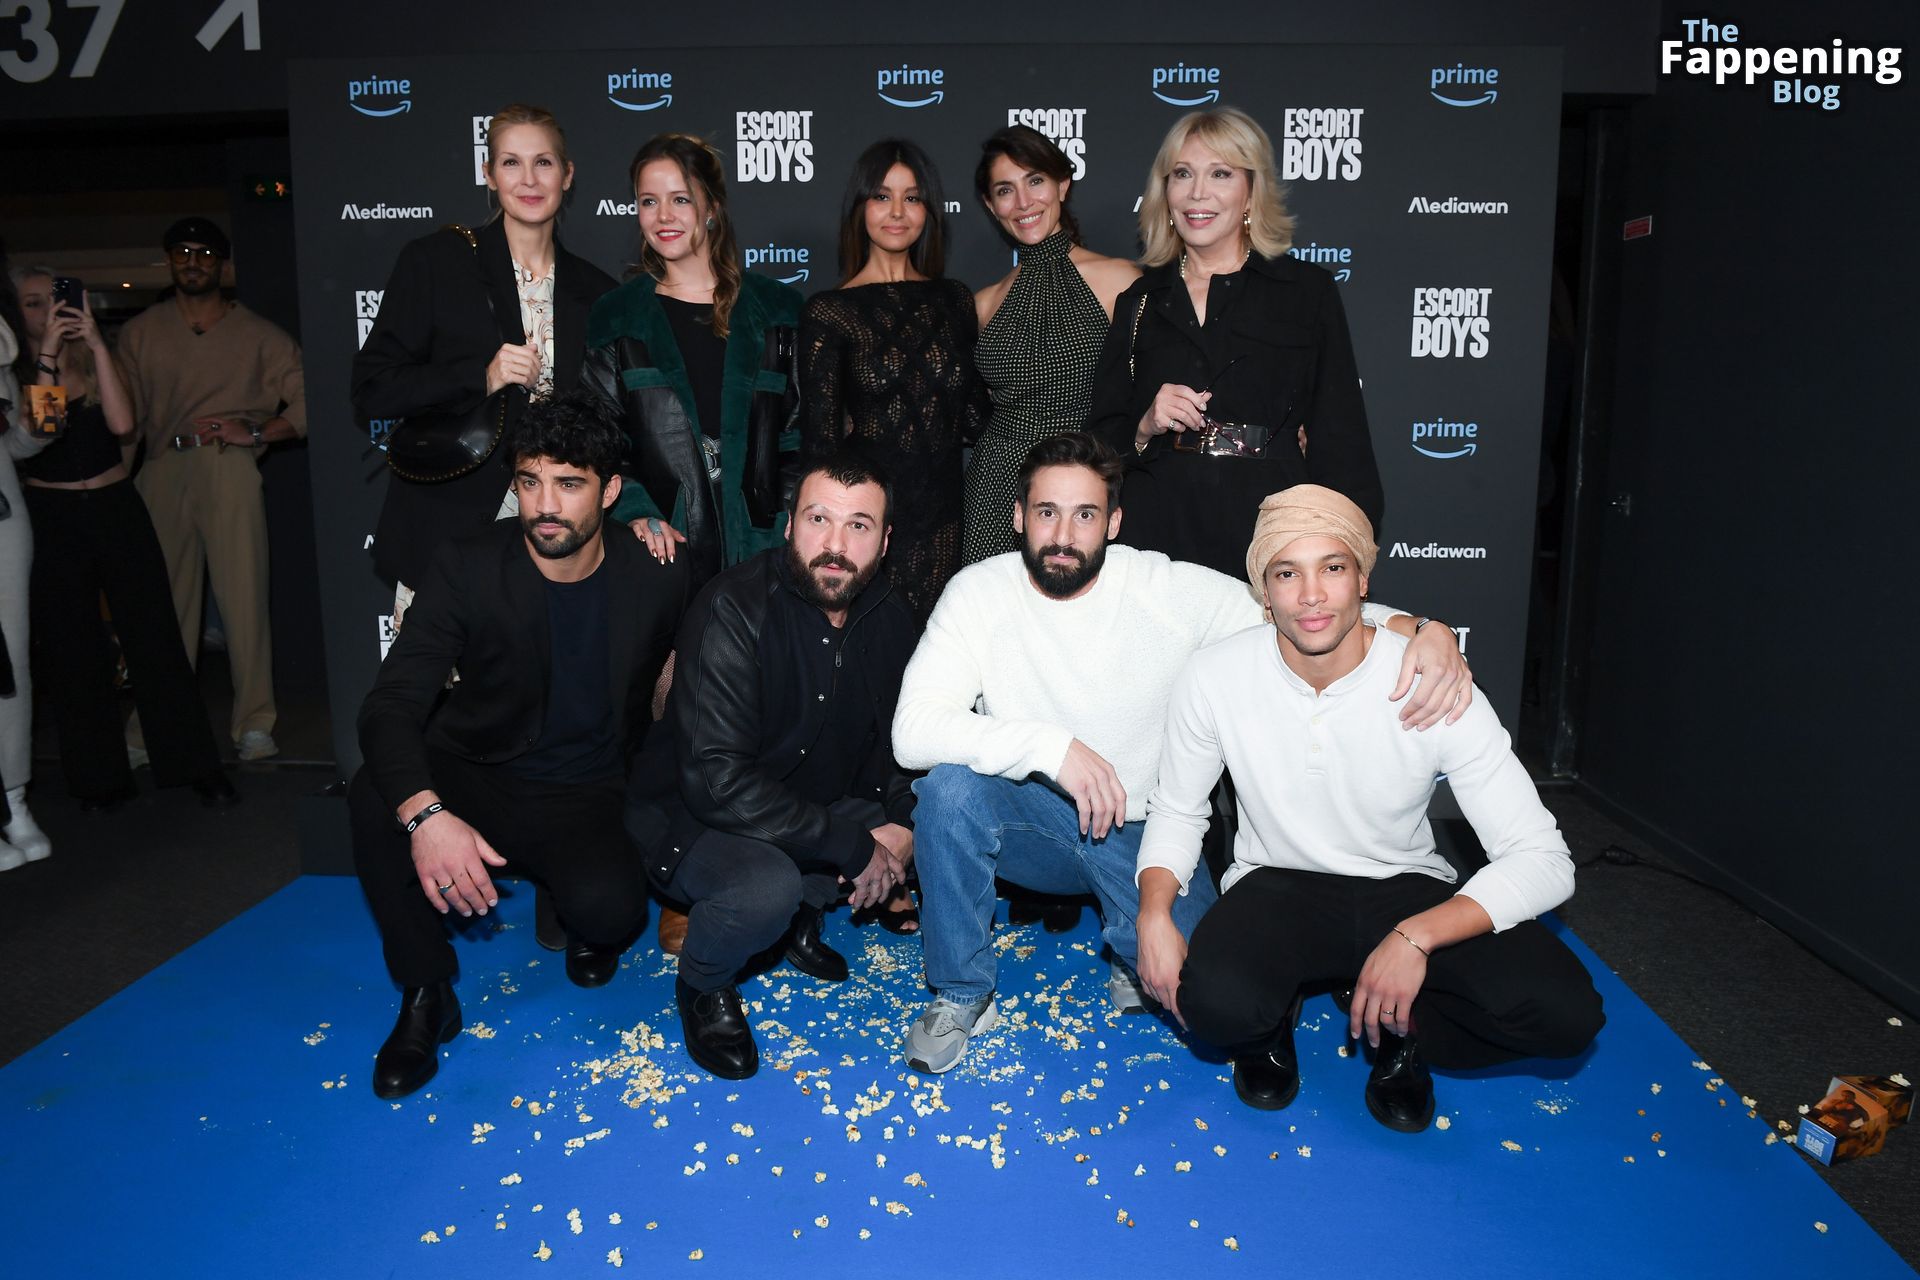 Zahia Dehar Flaunts Her Tits at the “Escort Boys” Premiere in Paris (119 Photos)